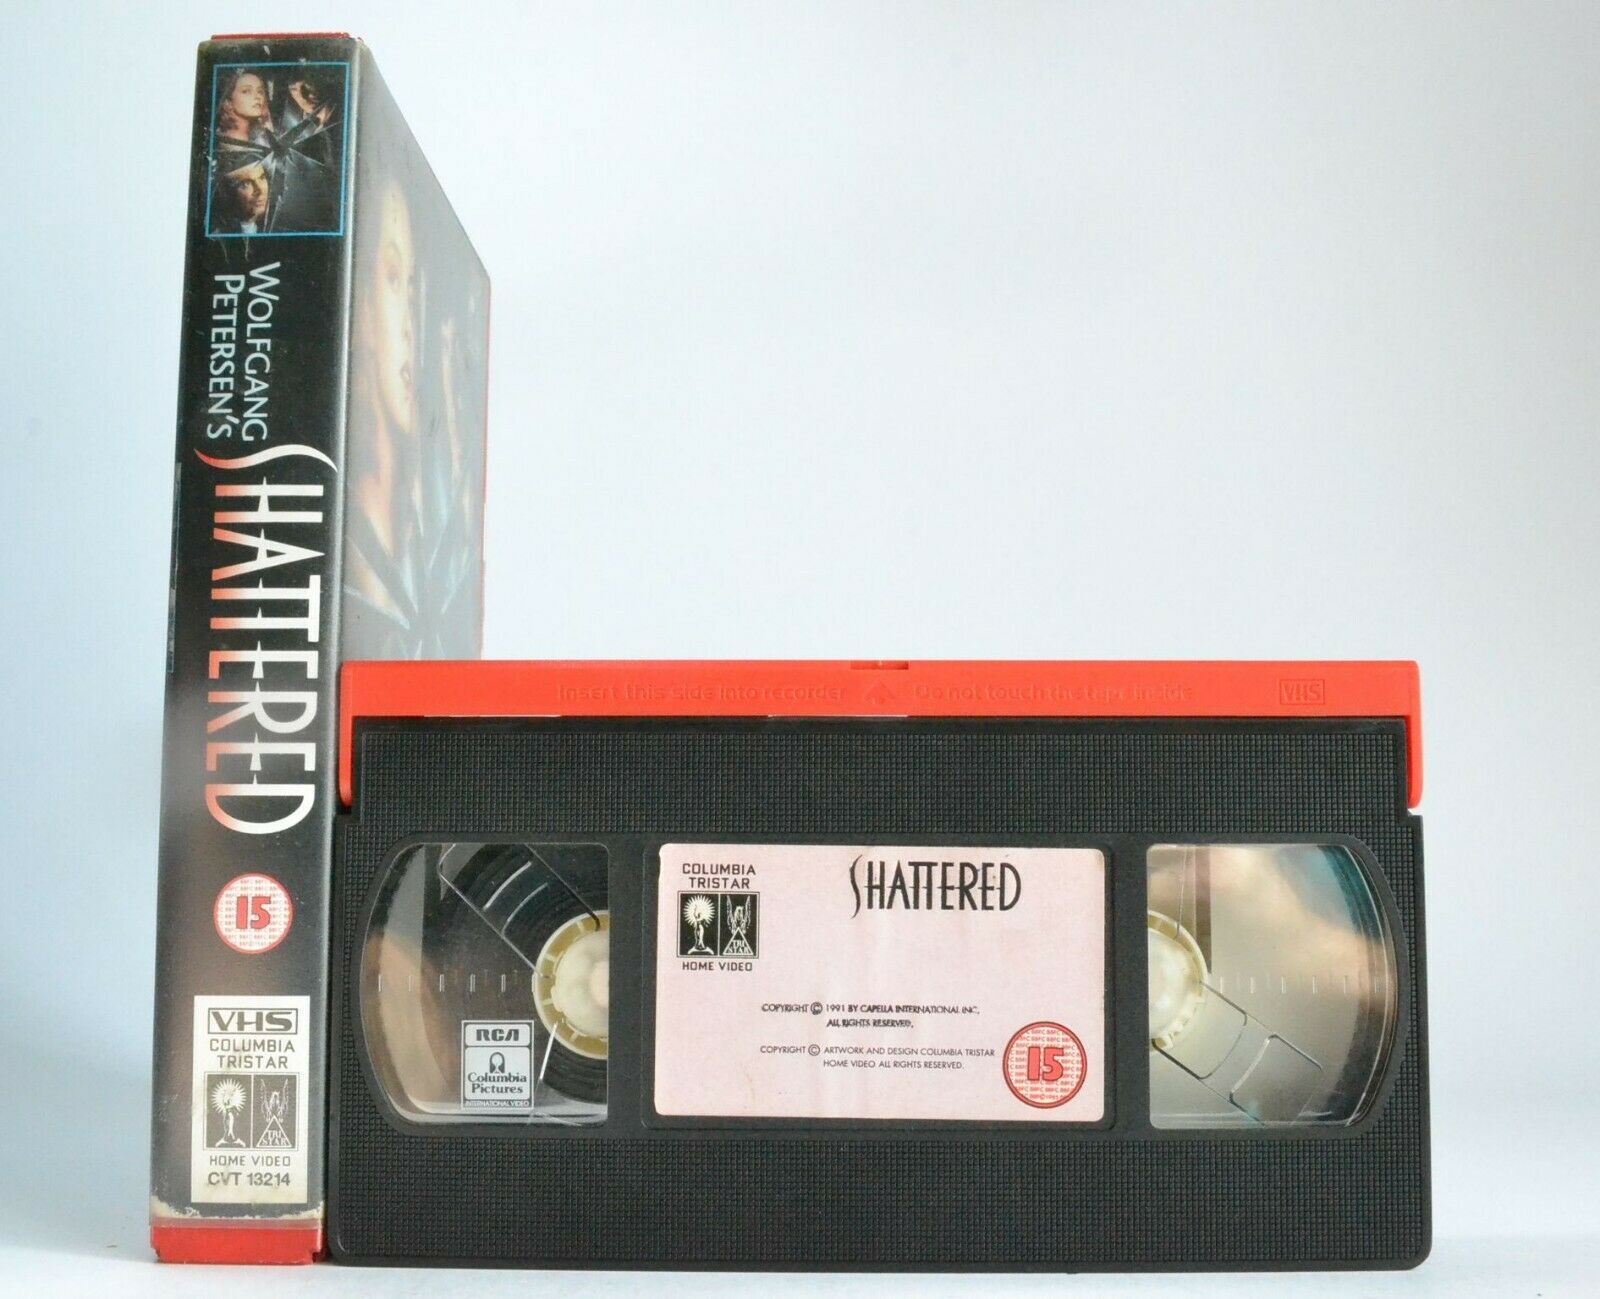 Shattered (1991); Wolfgang Petersen - Psychological Thriller - Bob Hoskins - VHS-